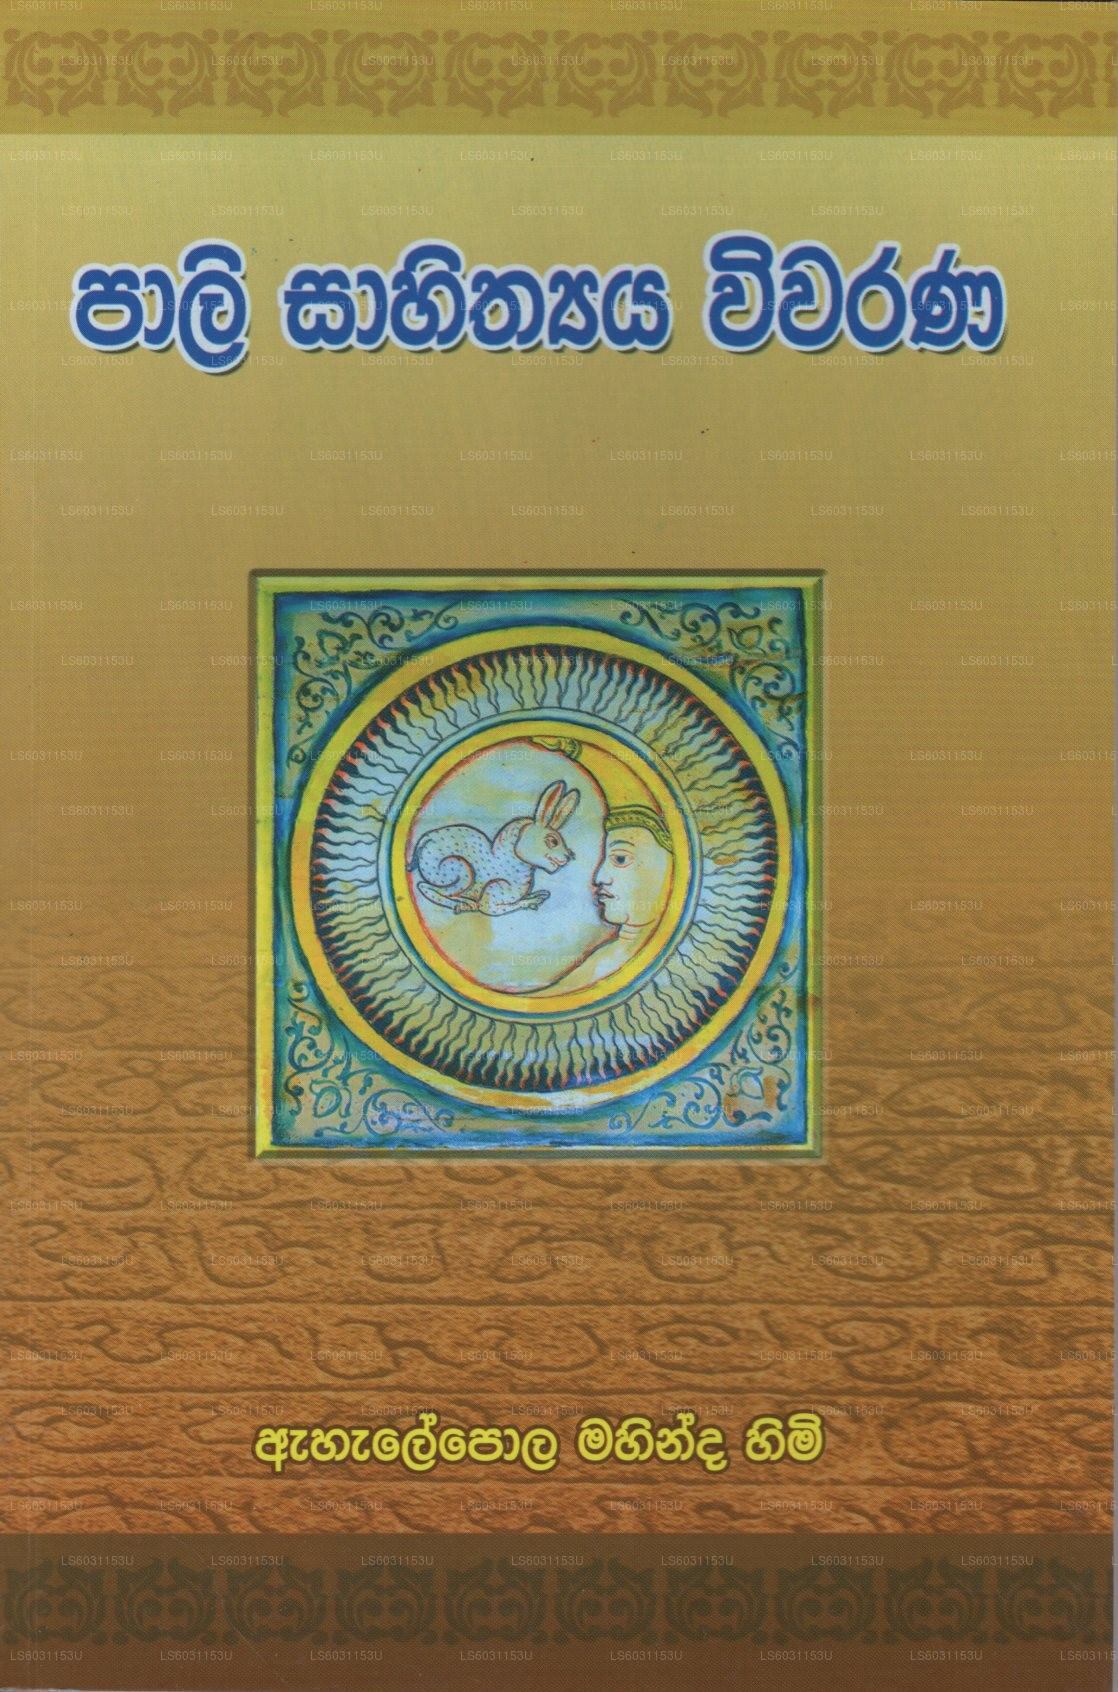 Pali Shithyaya Wivaranaya